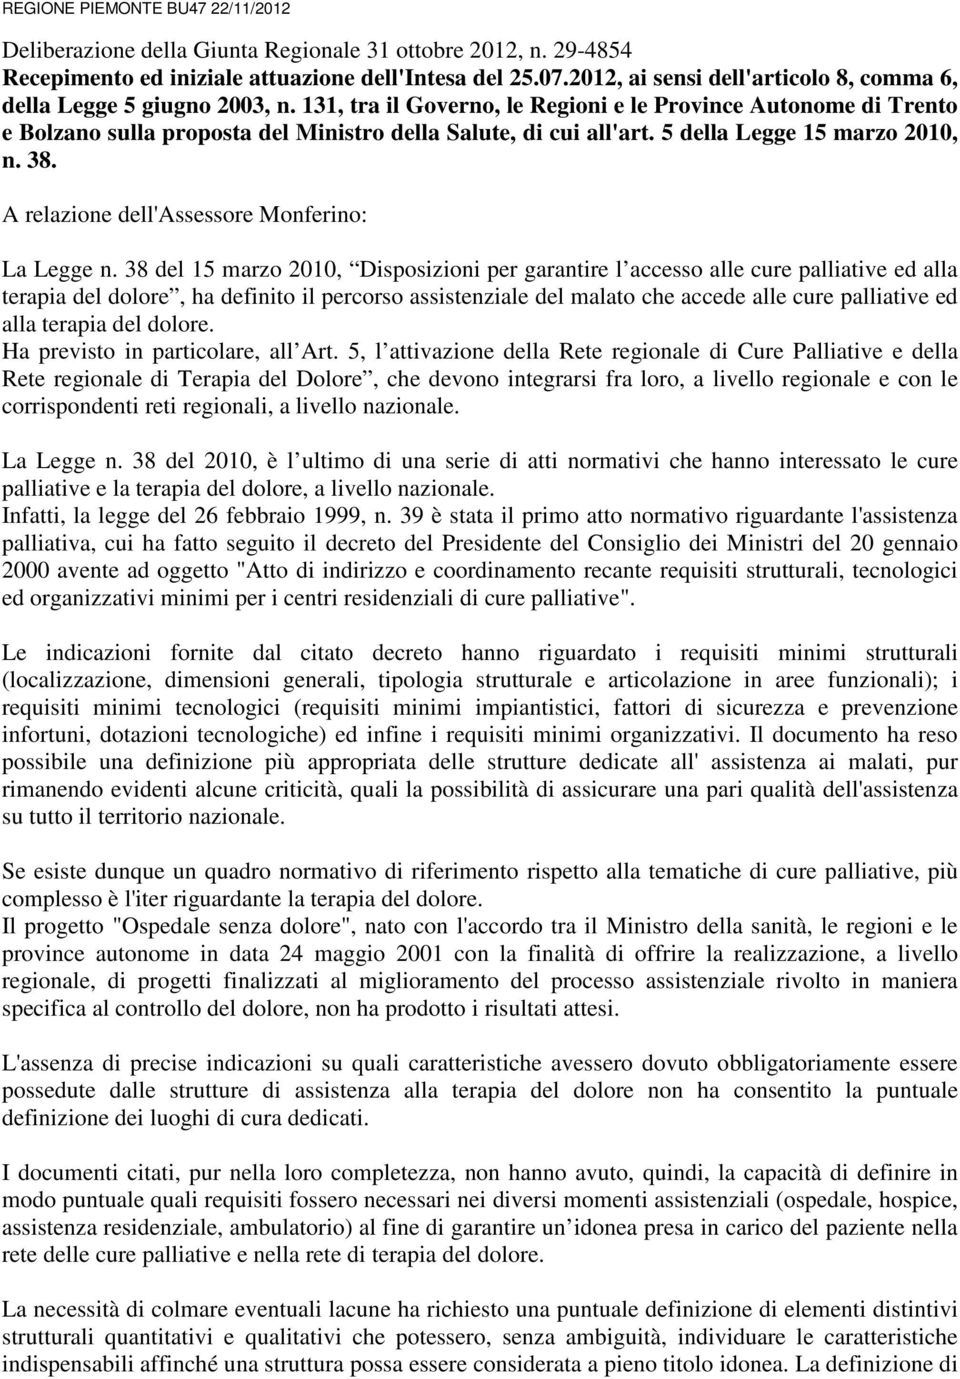 131, tra il Governo, le Regioni e le Province Autonome di Trento e Bolzano sulla proposta del Ministro della Salute, di cui all'art. 5 della Legge 15 marzo 2010, n. 38.